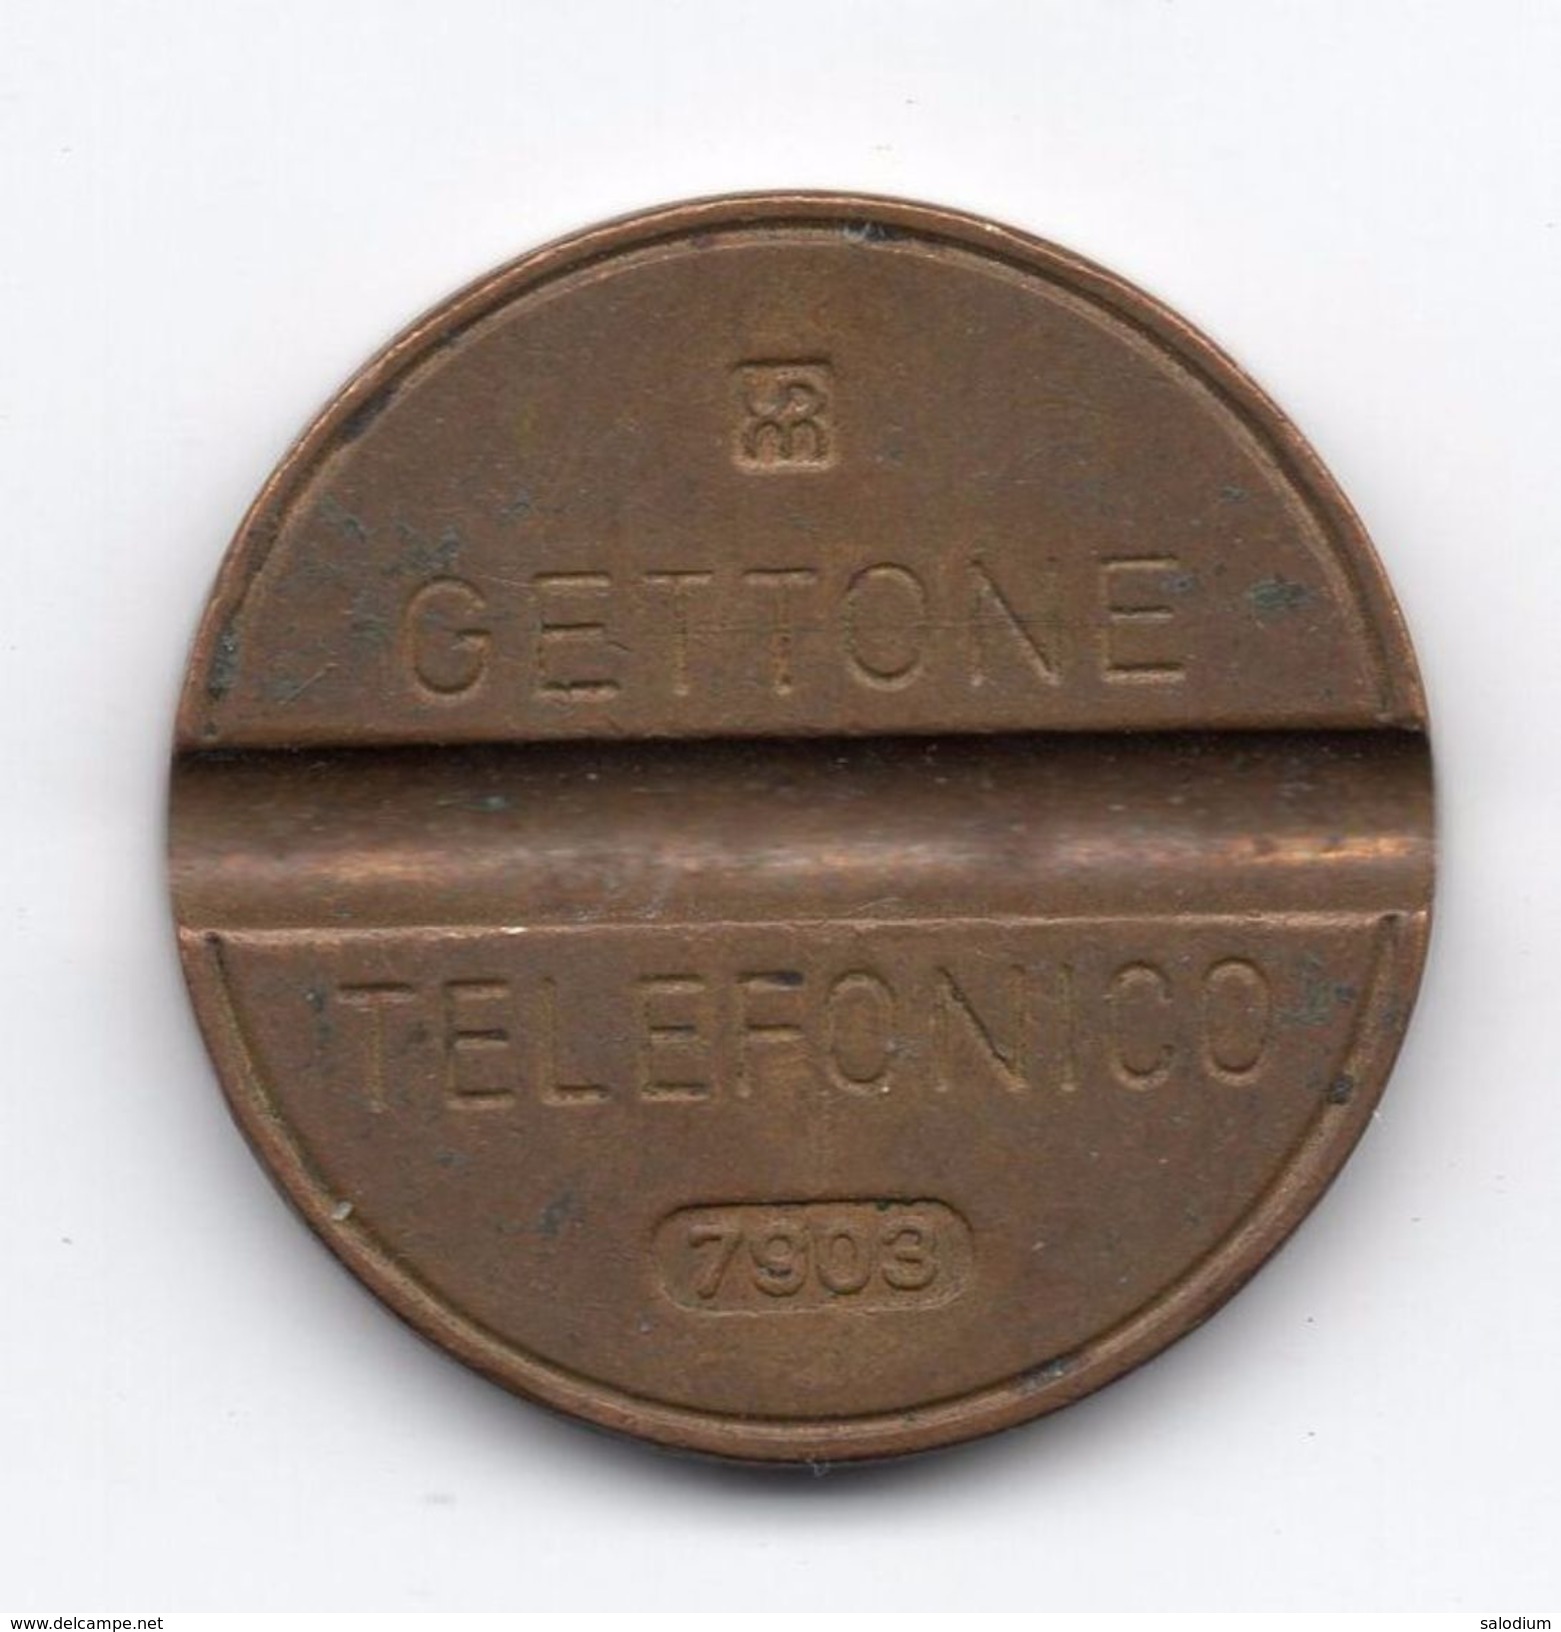 Gettone Telefonico 7903 Token Telephone - (Id-757) - Professionnels/De Société